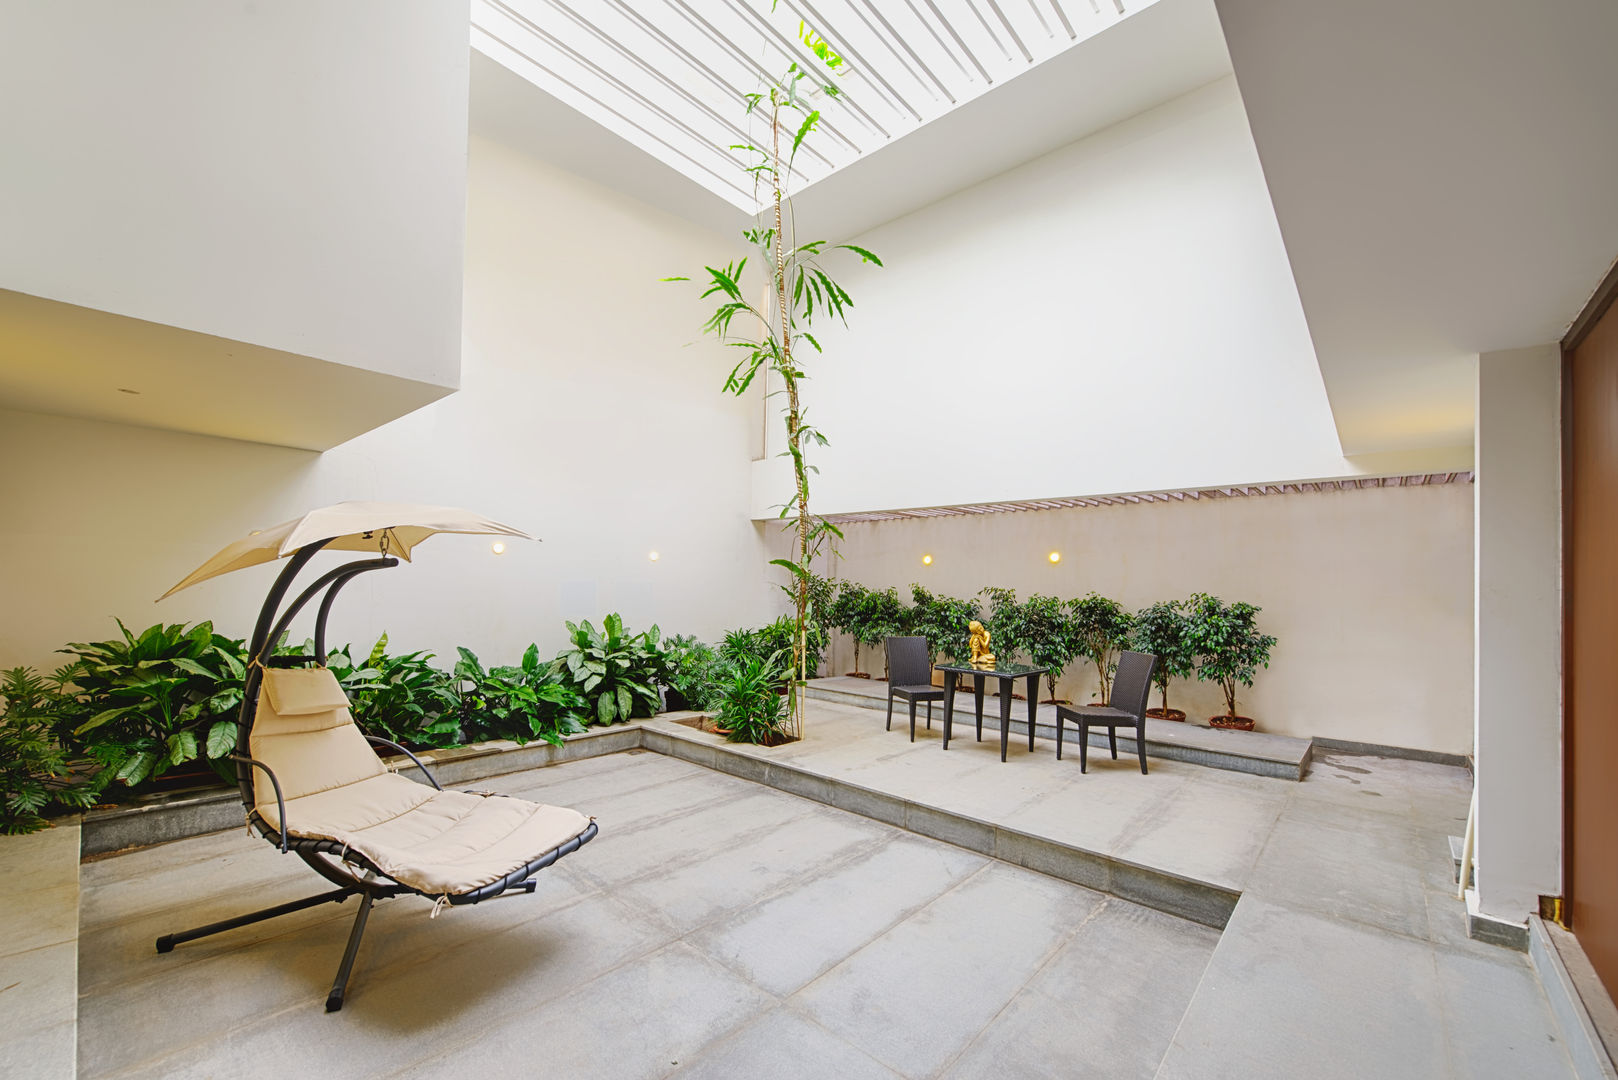 Mobius Home, Architecture Continuous Architecture Continuous Taman interior Interior landscaping